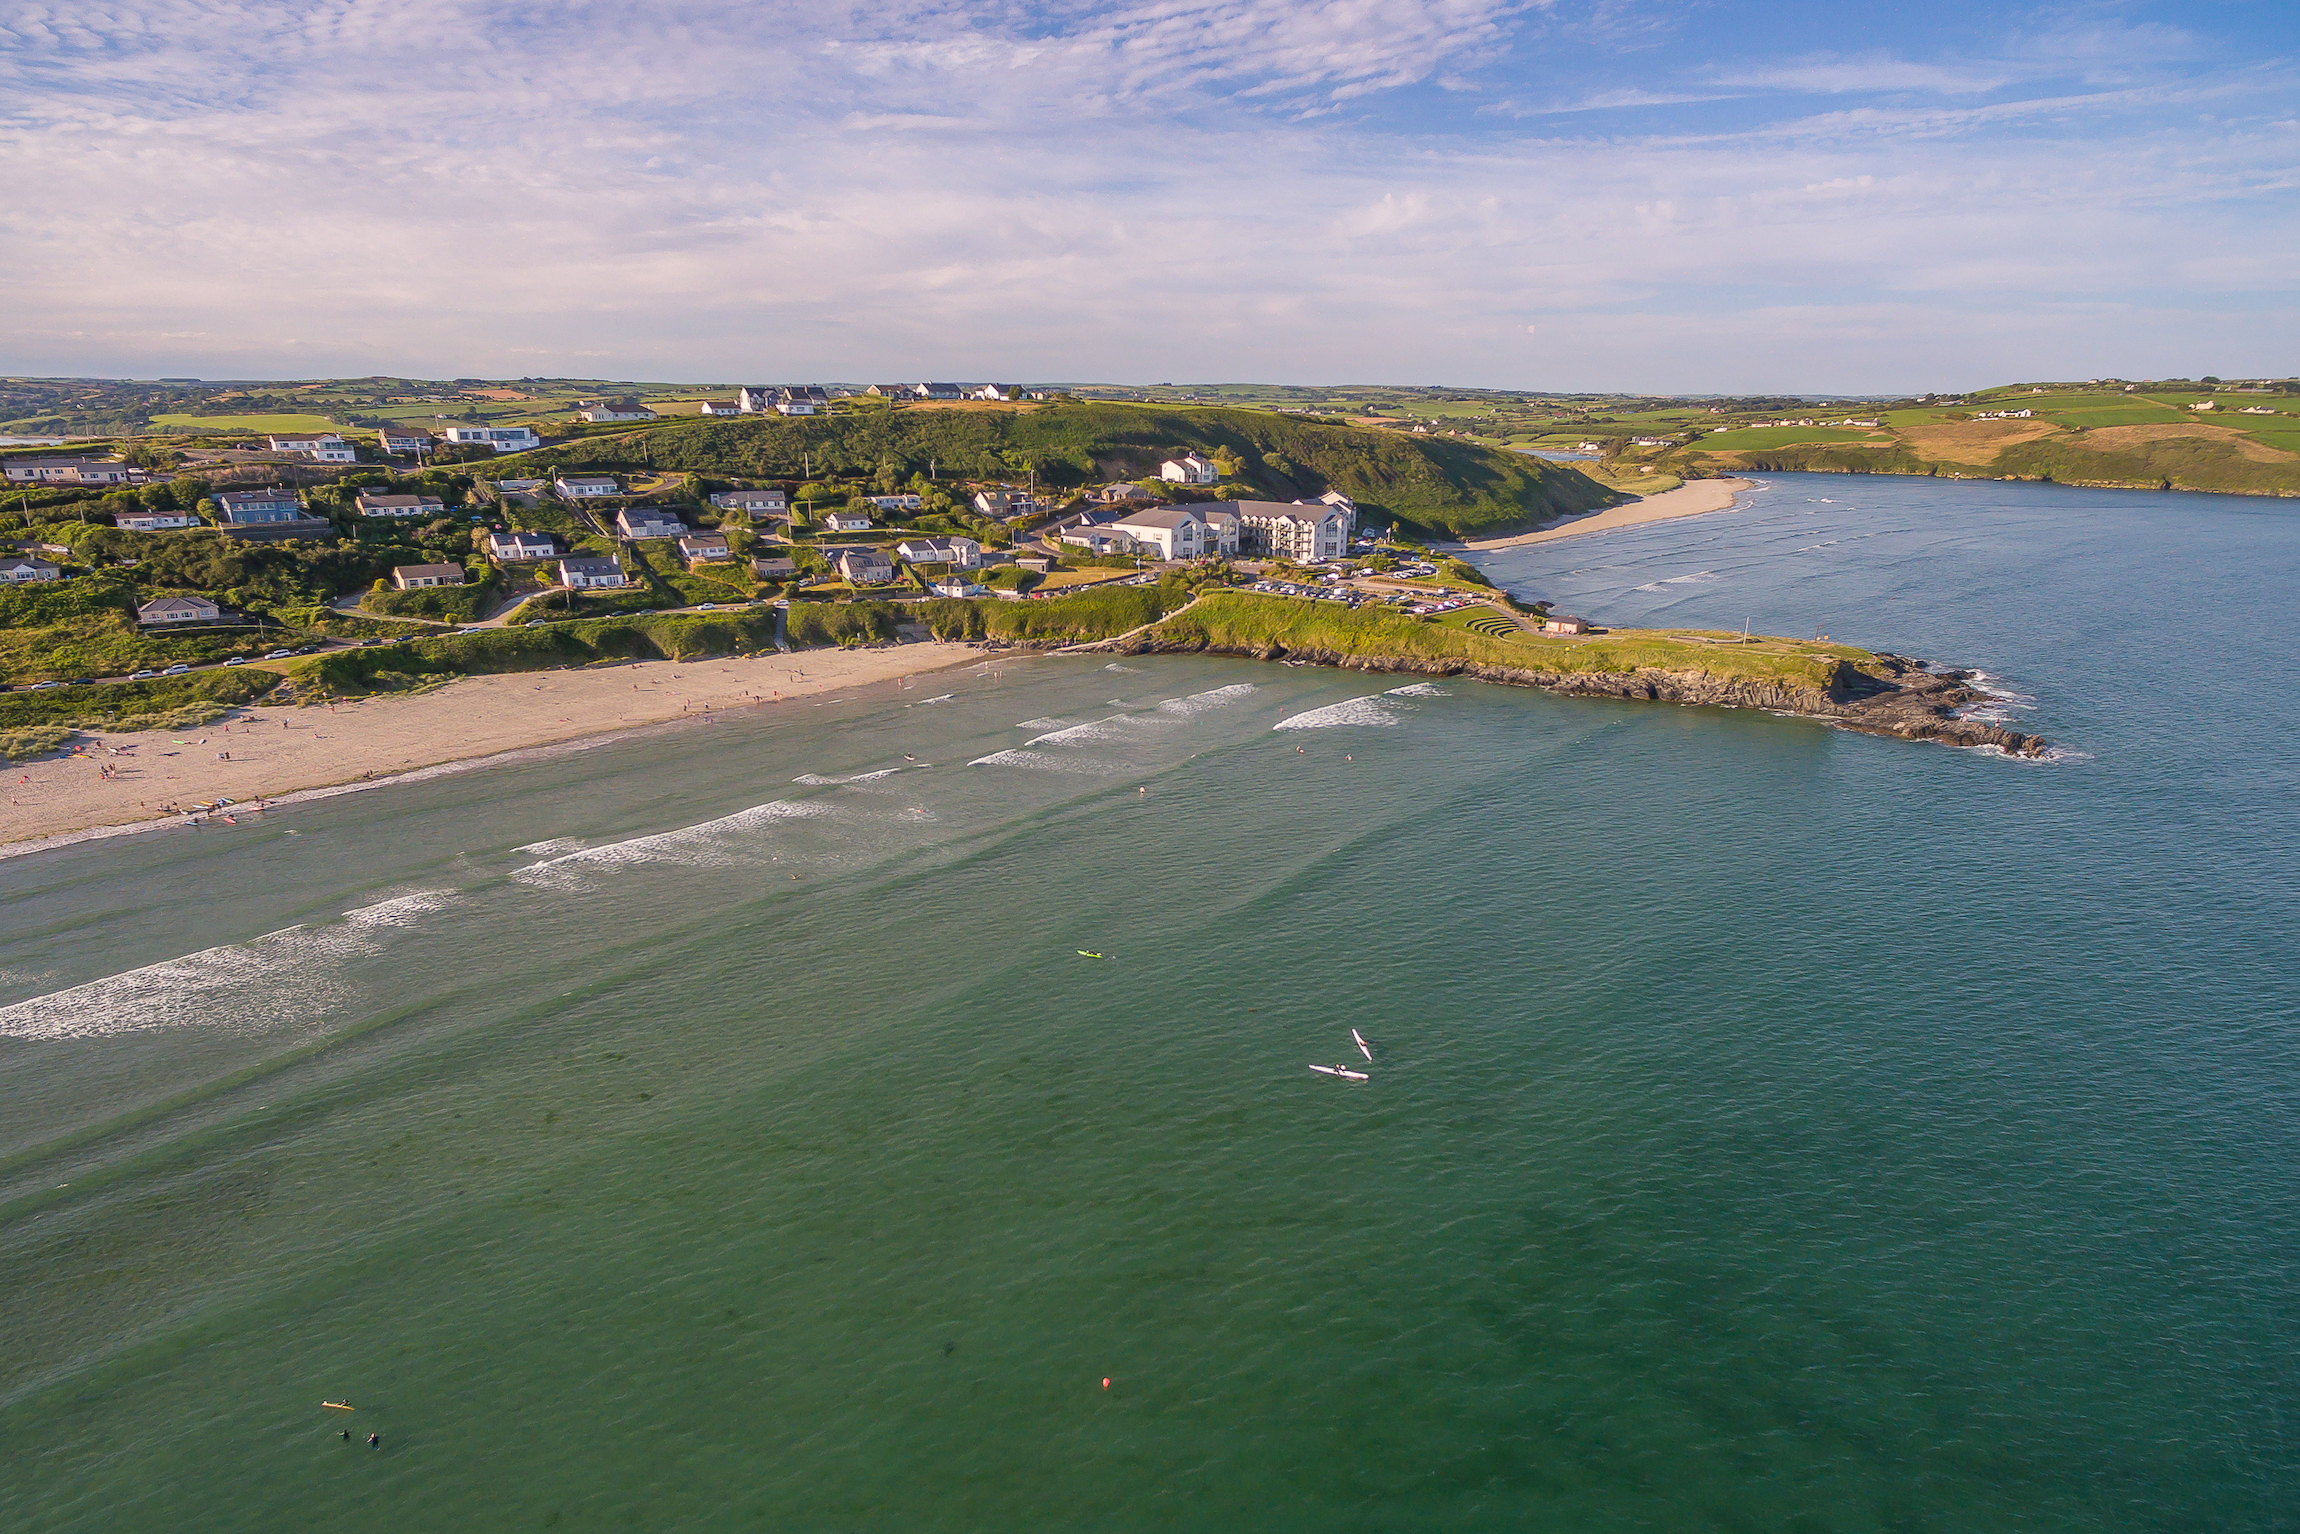 Plaża Inchydoney, Clonakilty, West Cork, Irlandia. Zdjęcia lotnicze najlepszej plaży w Irlandii.